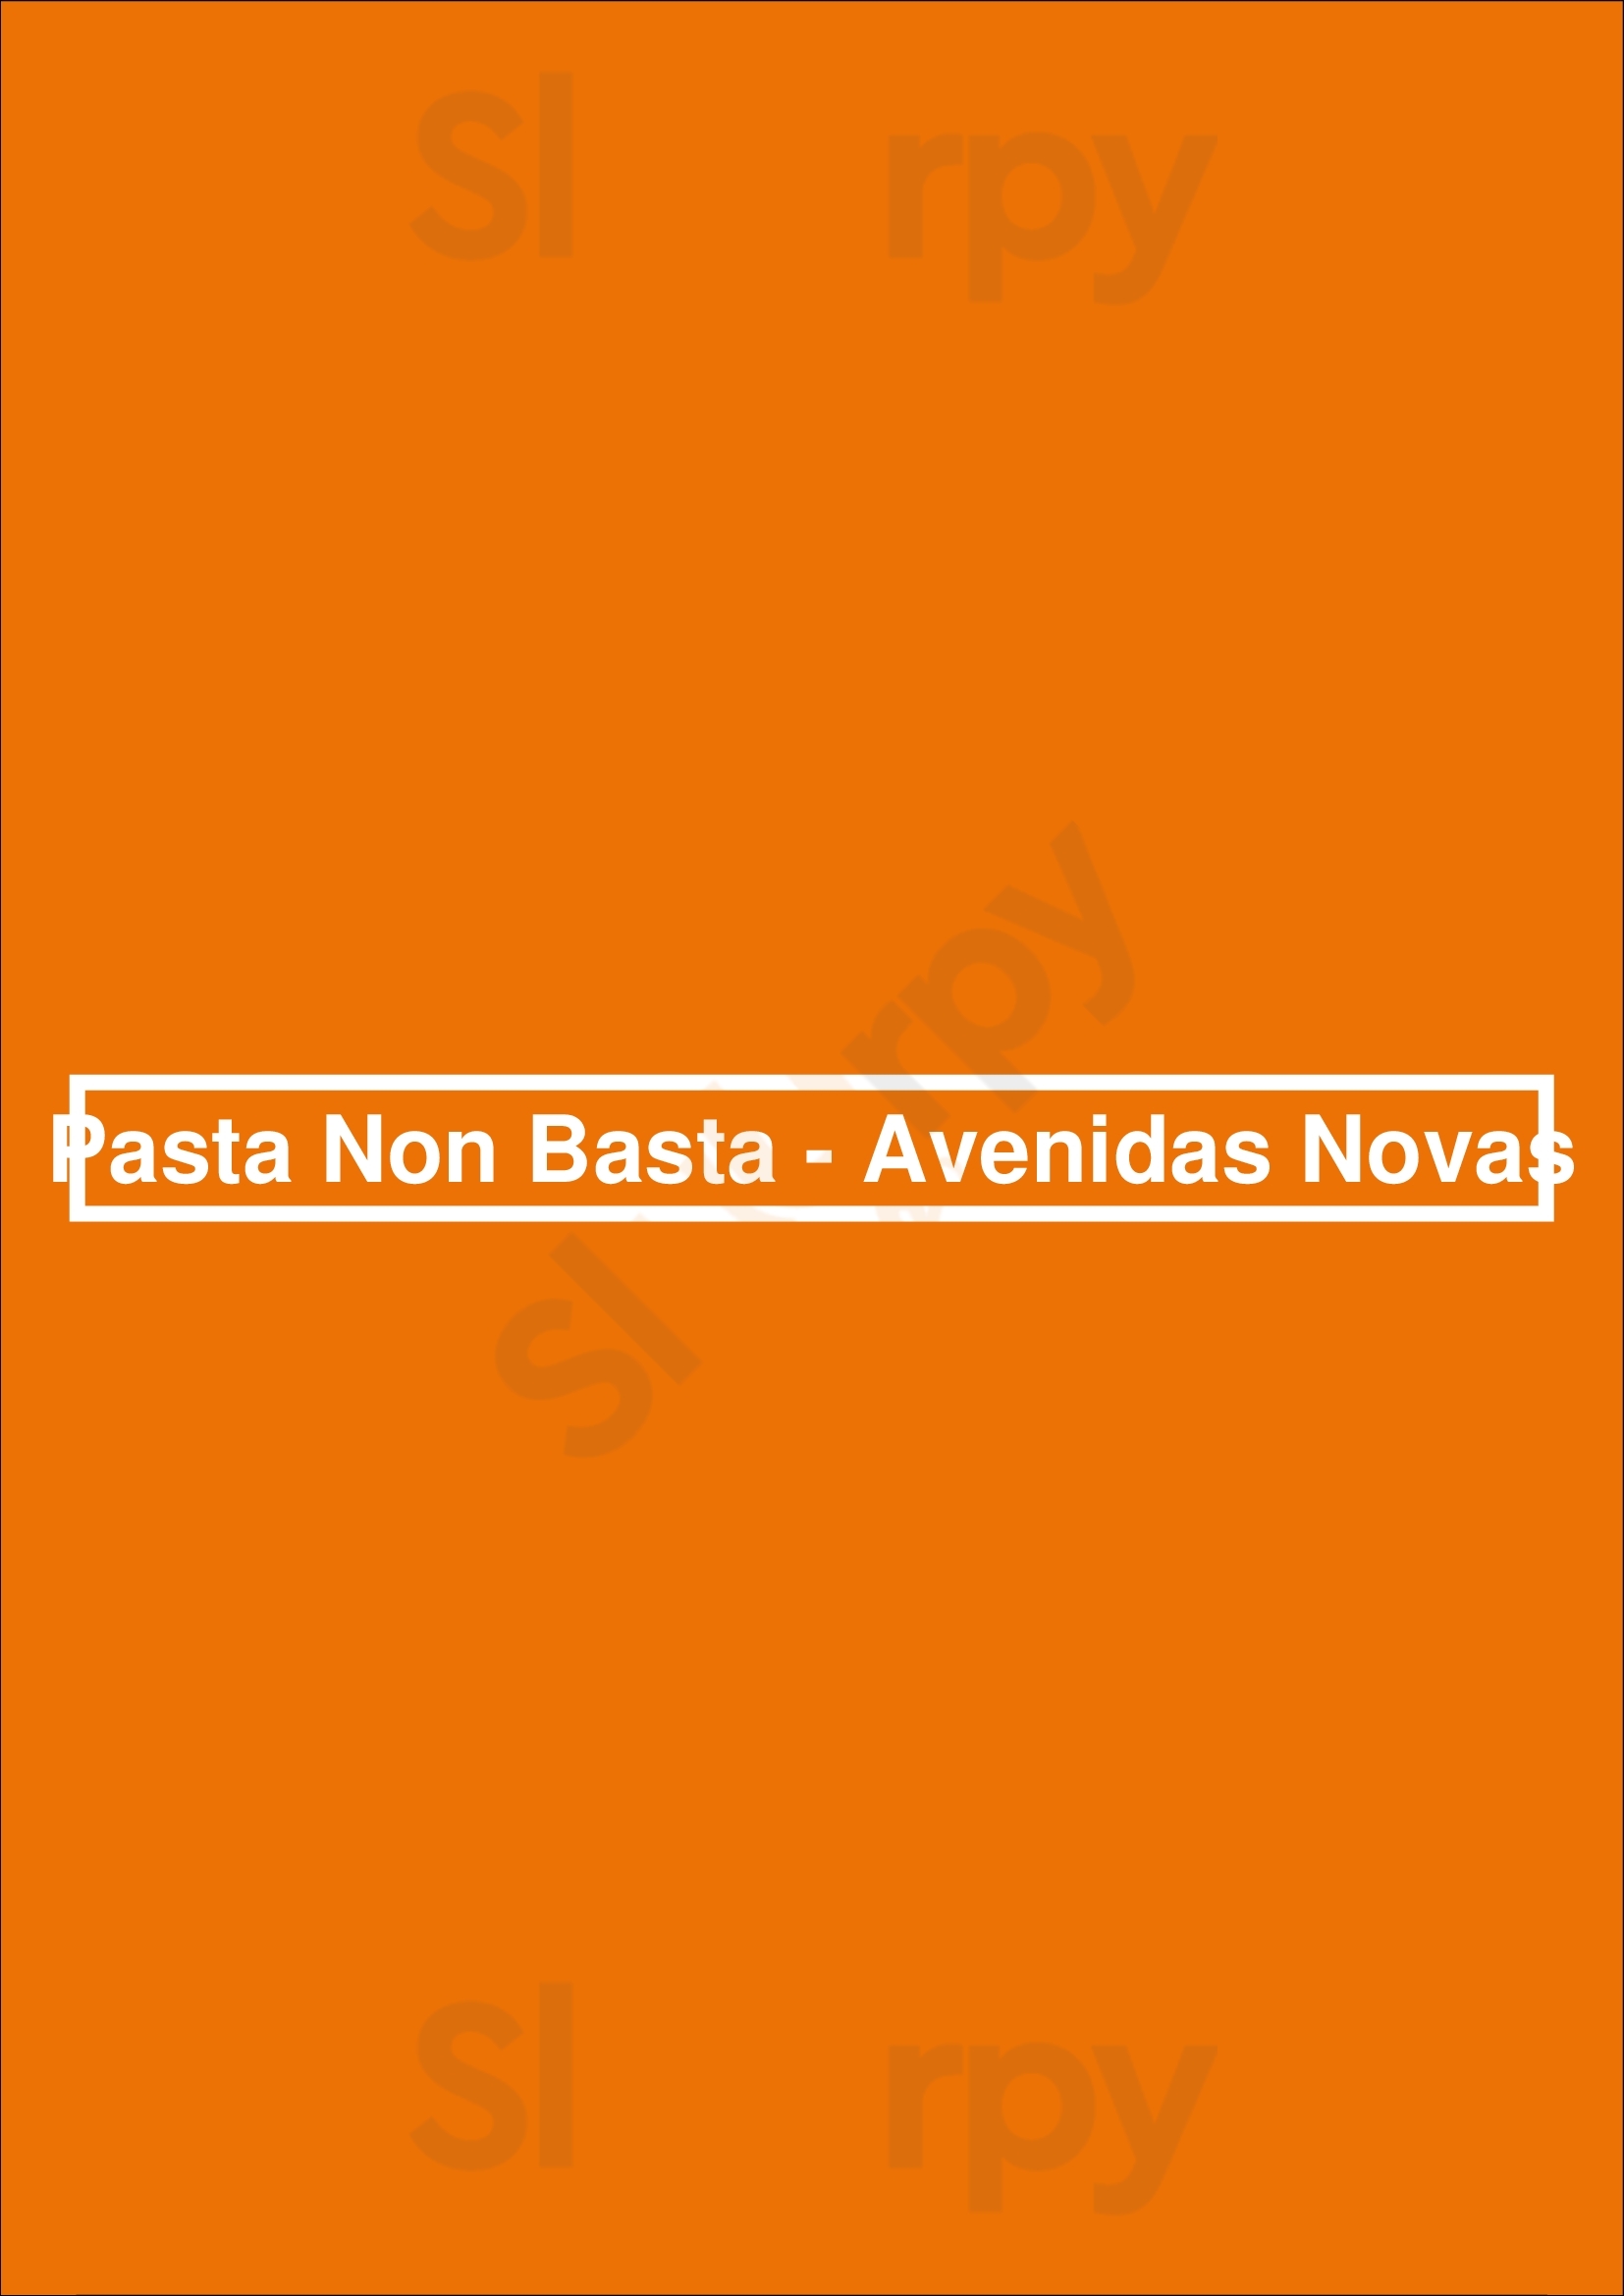 Pasta Non Basta - Avenidas Novas Lisboa Menu - 1